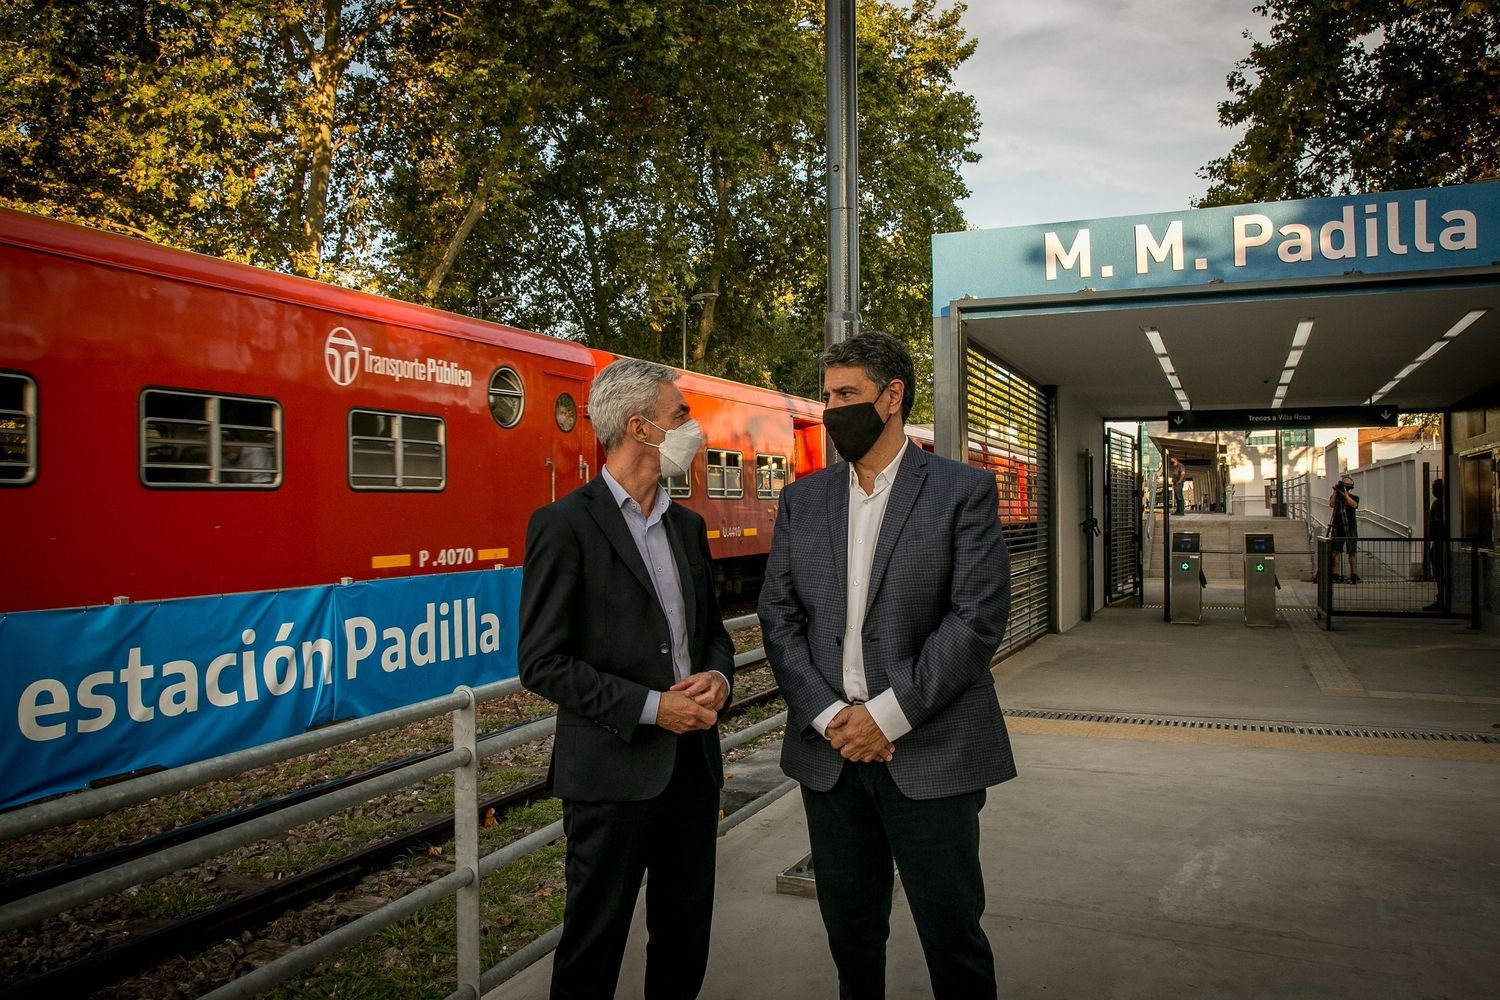 Inauguraron la Estación Padilla: “Es bueno que en la Argentina lo que comenzó uno, lo pueda terminar otro” dijo Macri